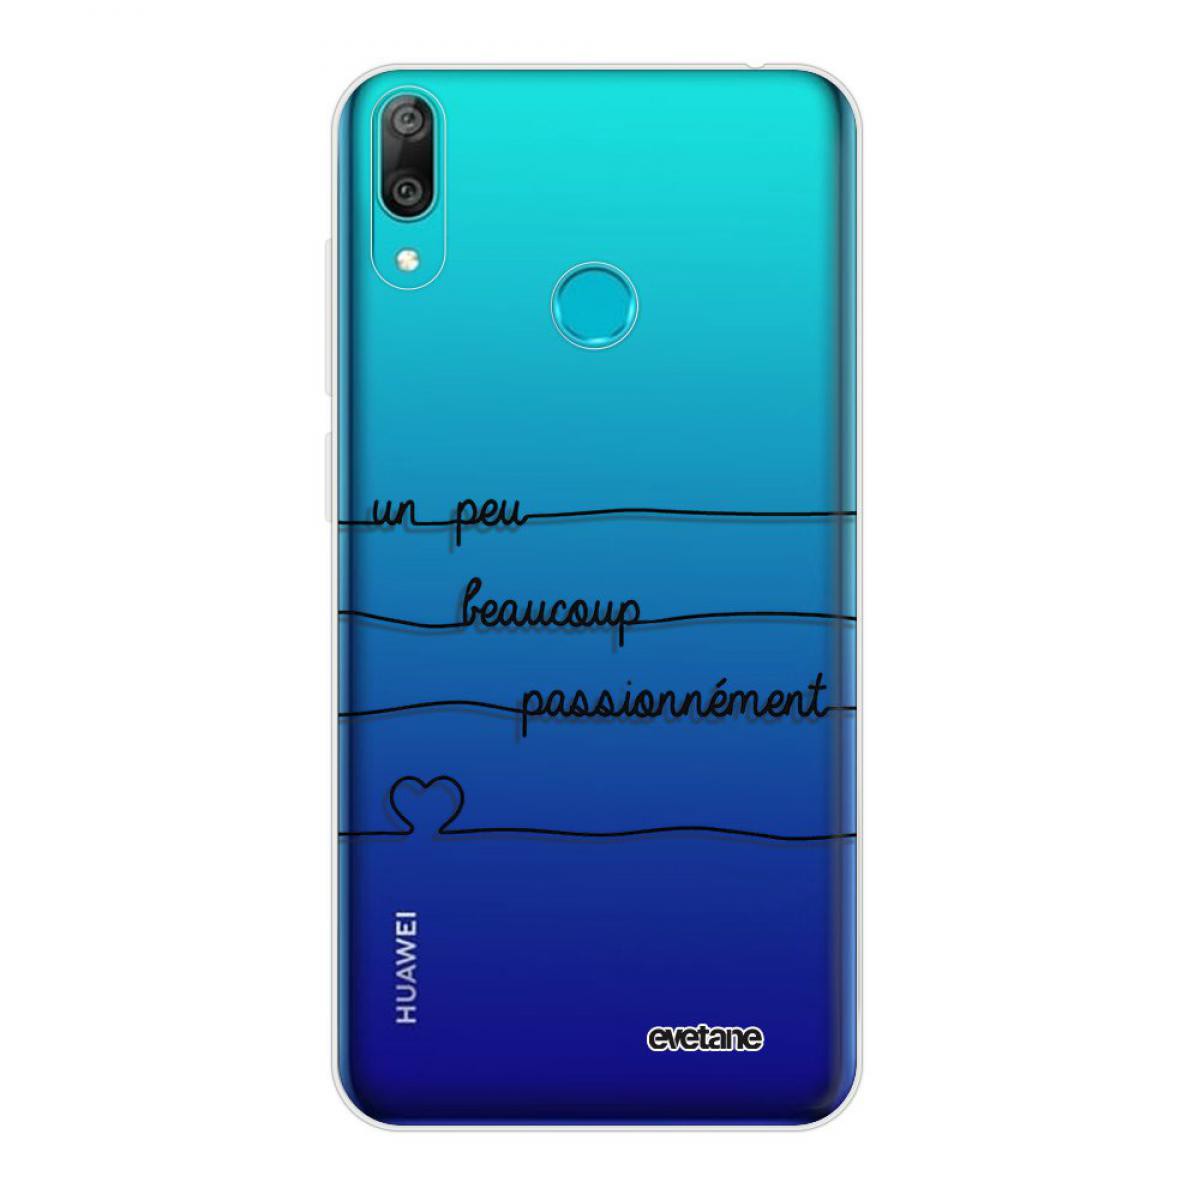 Evetane - Coque Huawei Y7 2019 360 intégrale transparente Un peu, Beaucoup, Passionnement Tendance Evetane. - Coque, étui smartphone